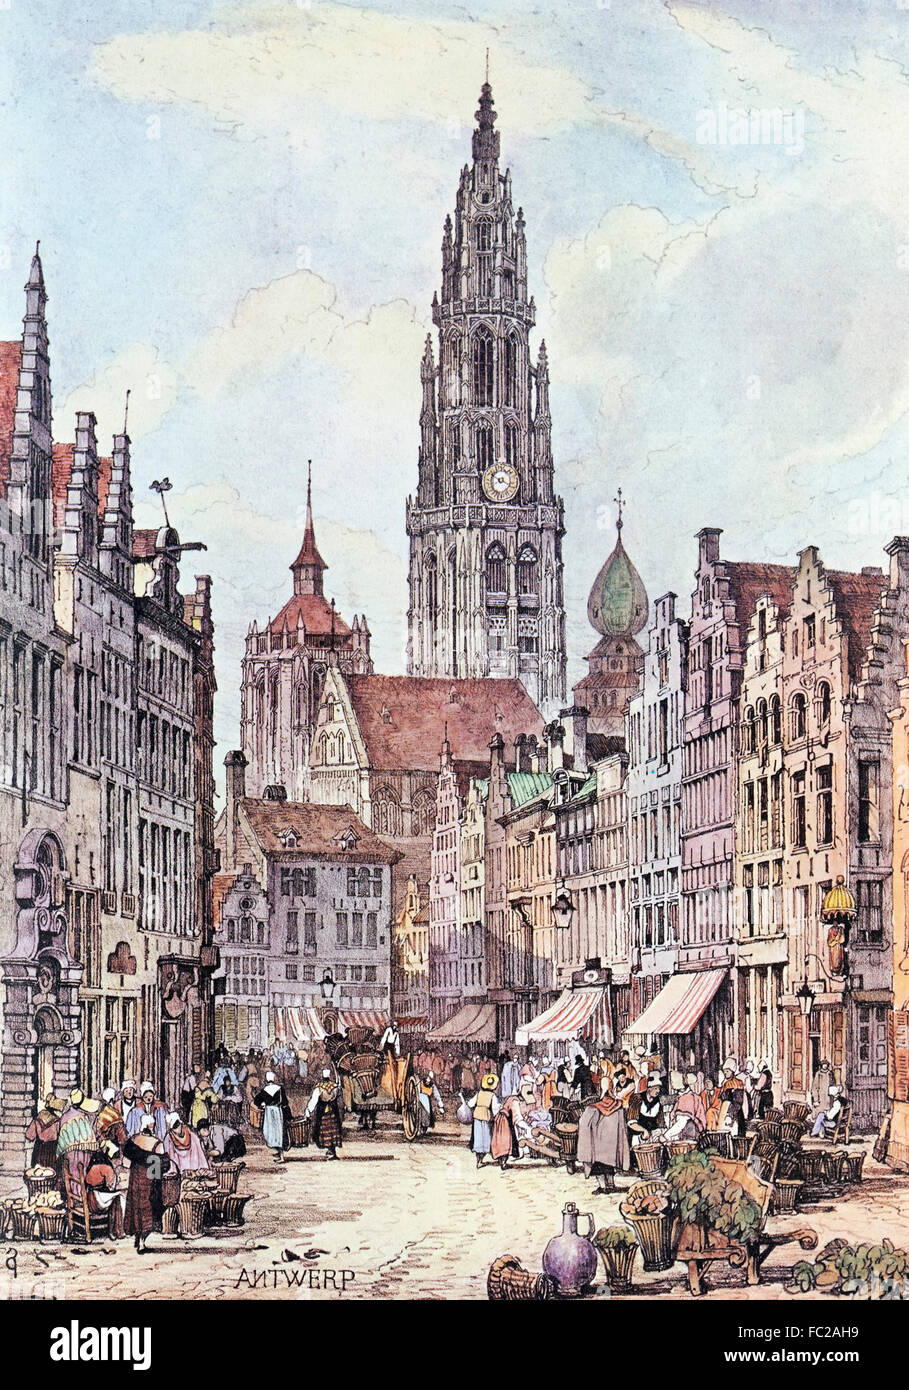 Lithographie couleur, environ 1830, vue sur la ville, la cathédrale, Anvers, Belgique Banque D'Images